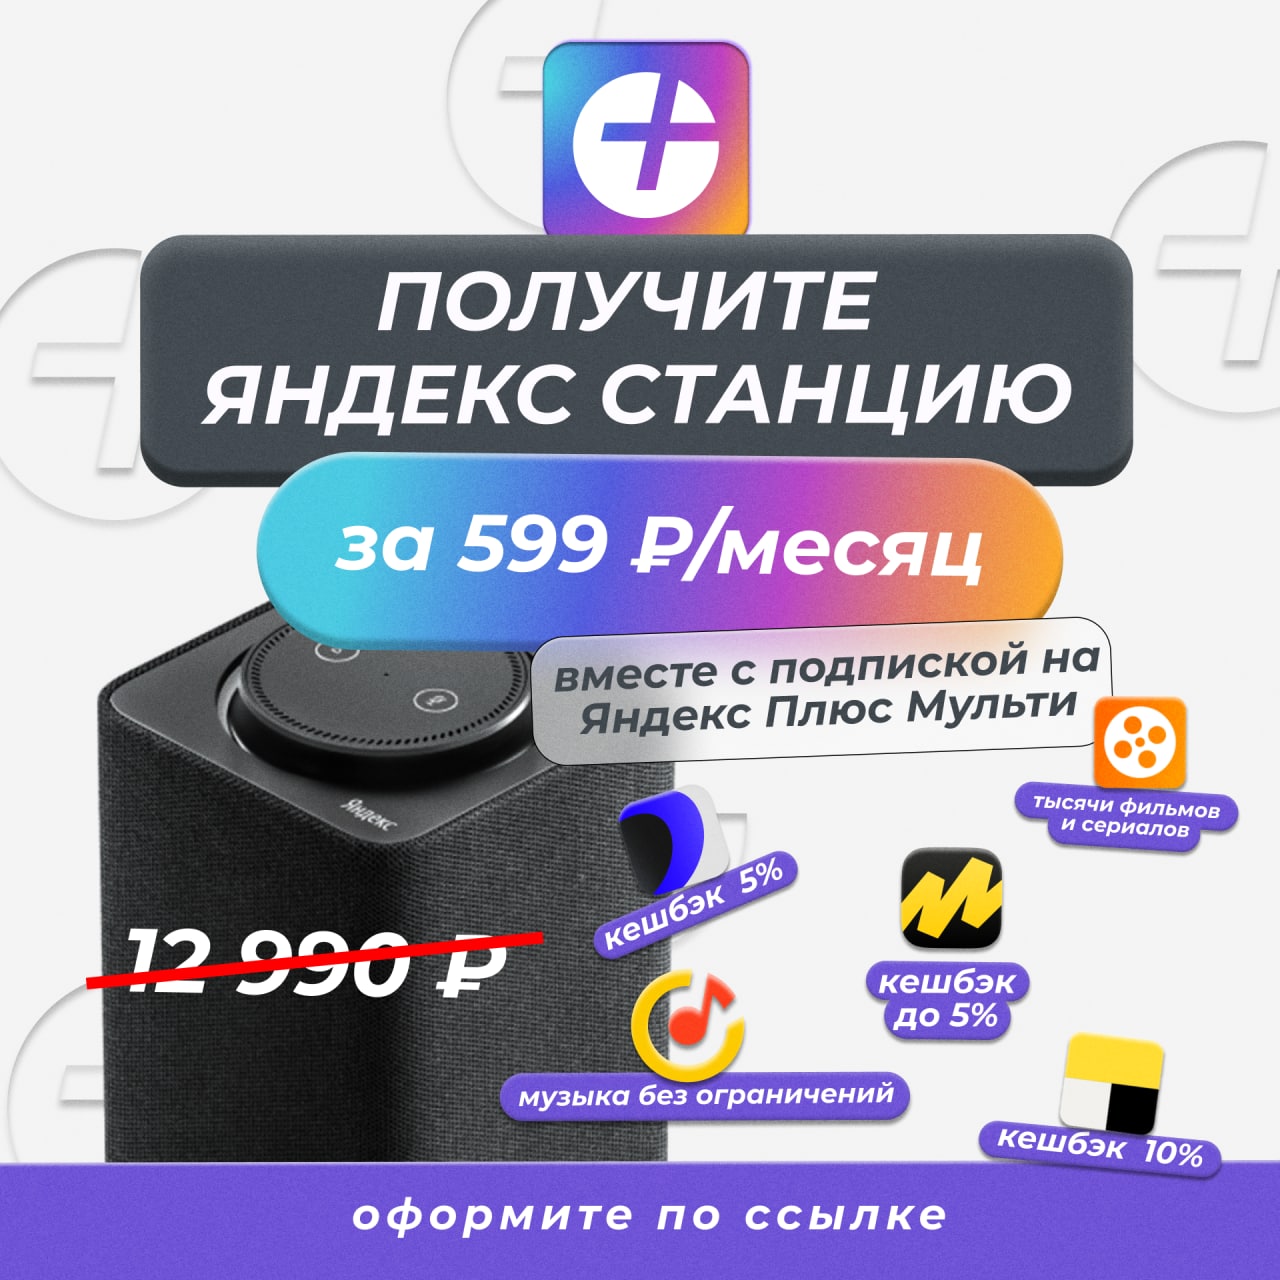 Яндекс подписка купить телеграмм фото 25